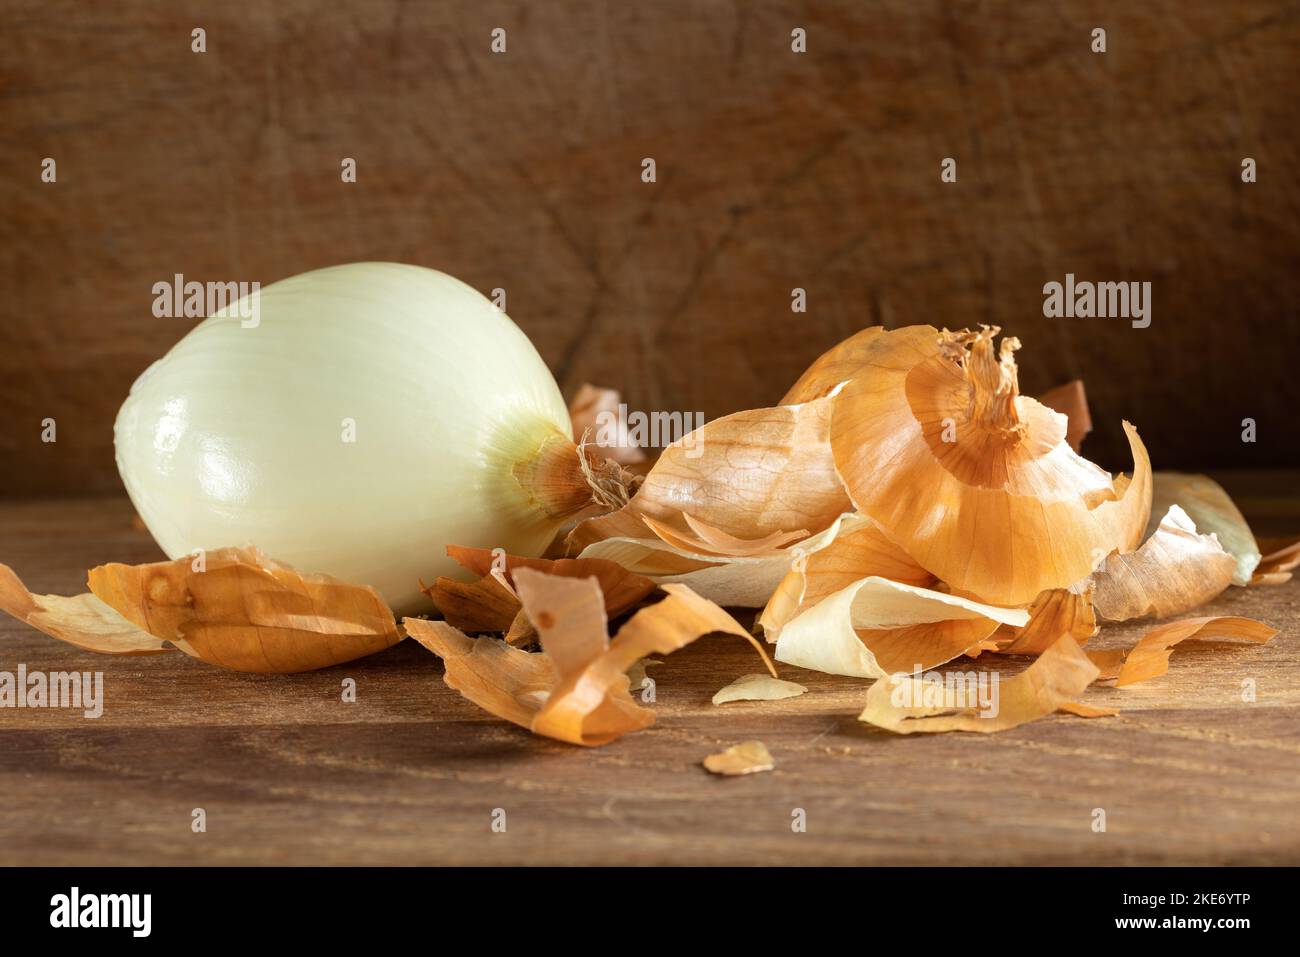 Una cebolla y mucha cáscara o piel sobre fondo de madera Foto de stock